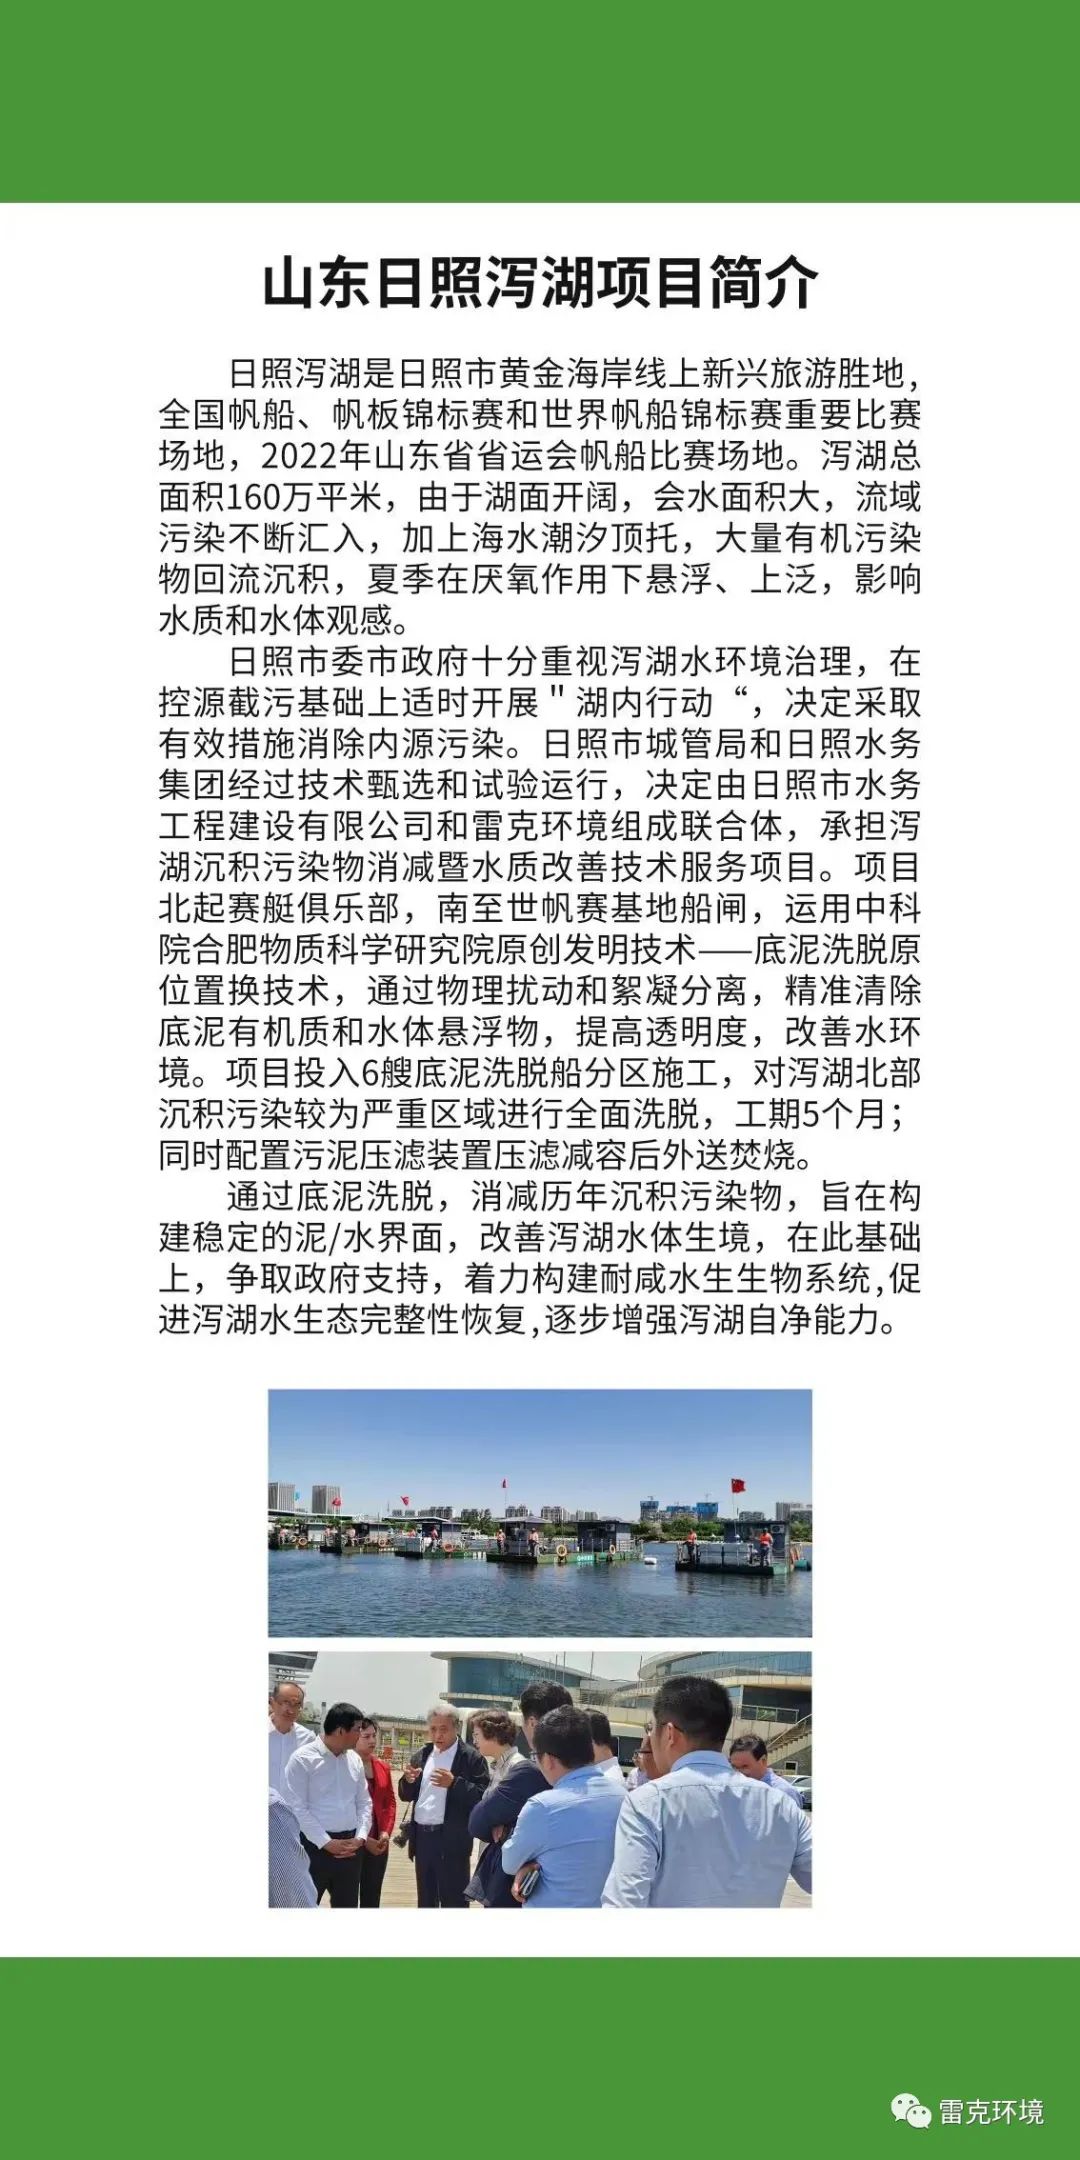 中國水博覽會雷克環境展位內容展示